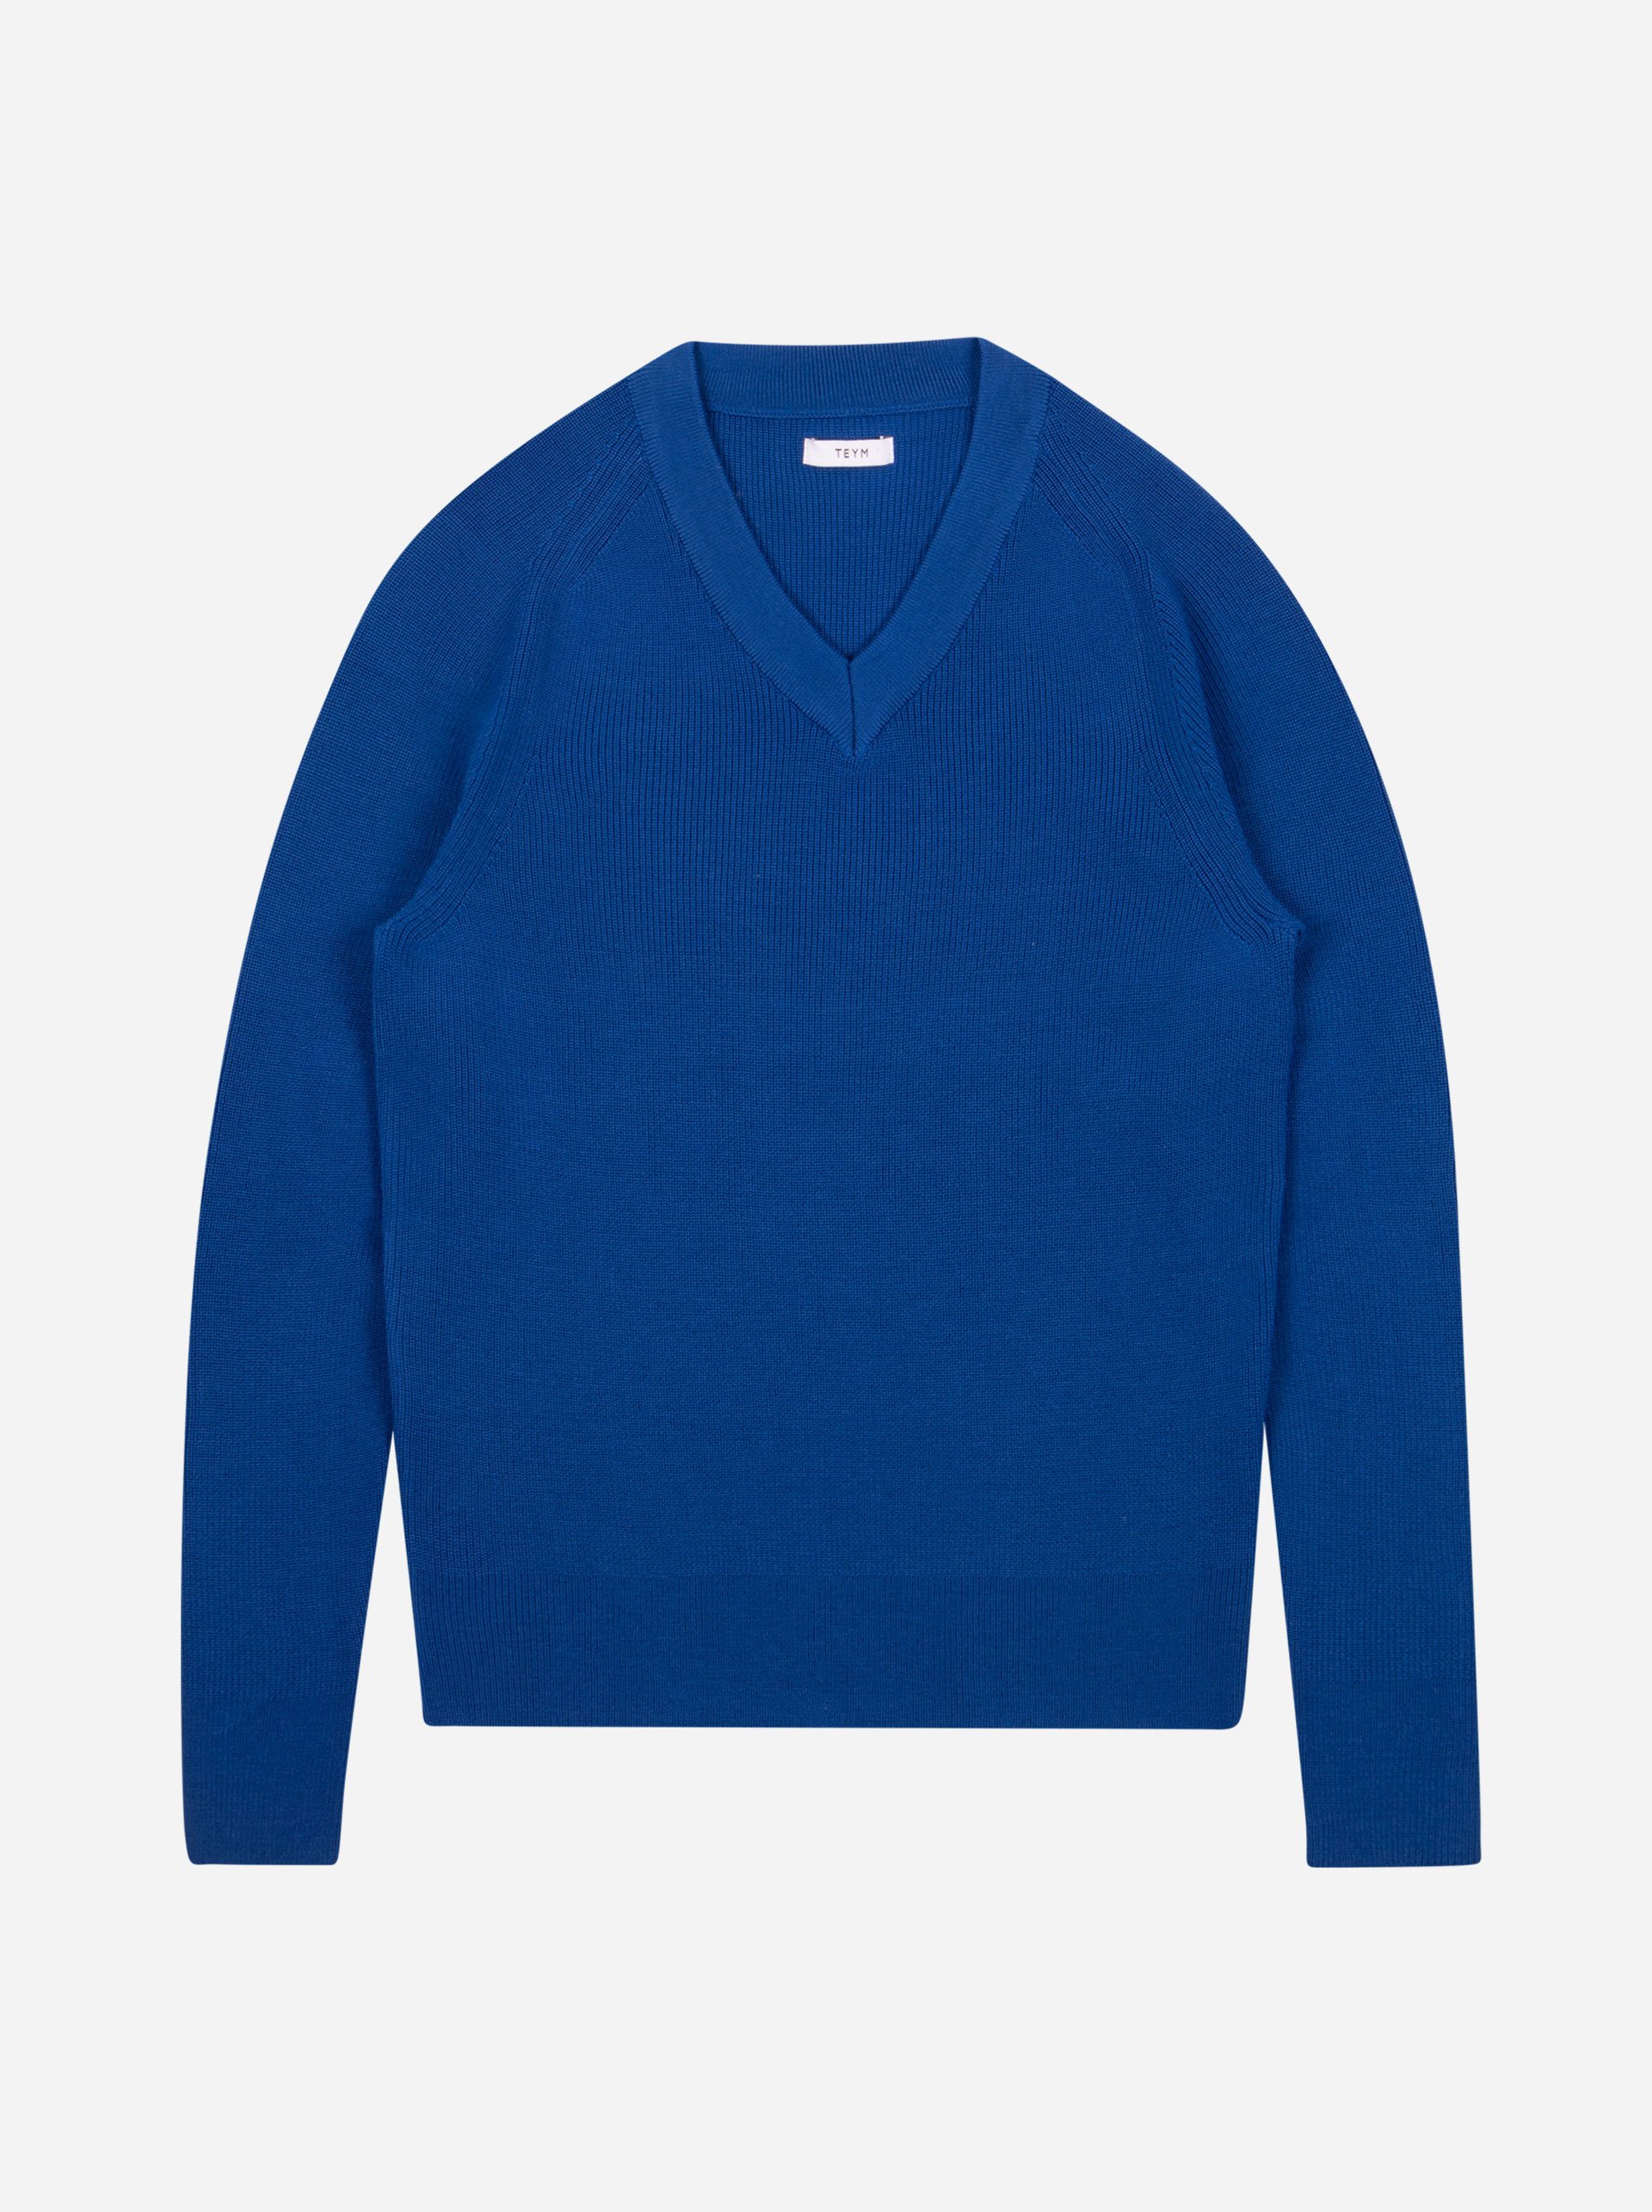 Teym - V-Neck - The Merino Sweater - Women - Cobalt Blue - 4